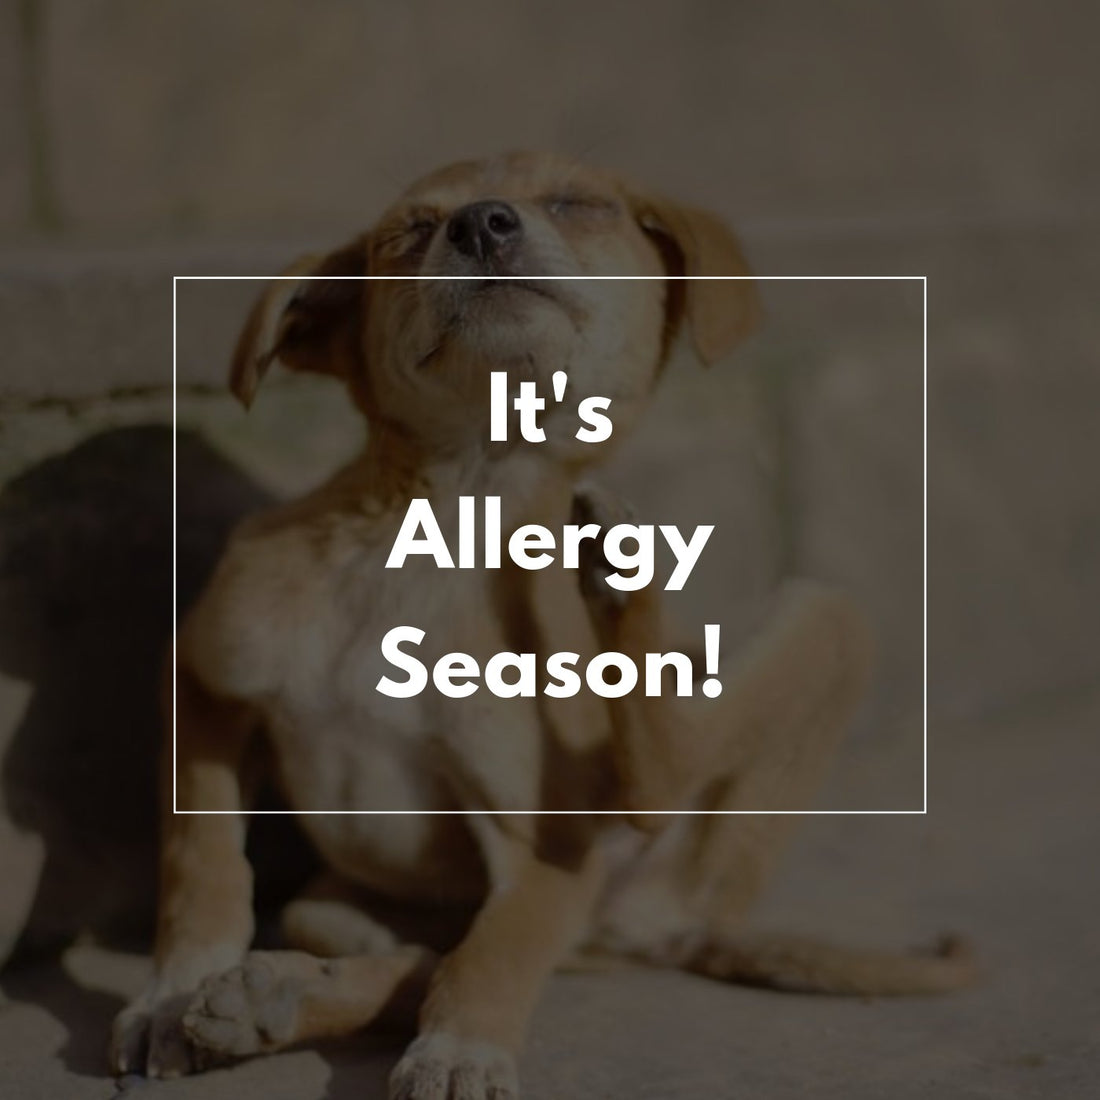 It's Allergy Season! - Proflax